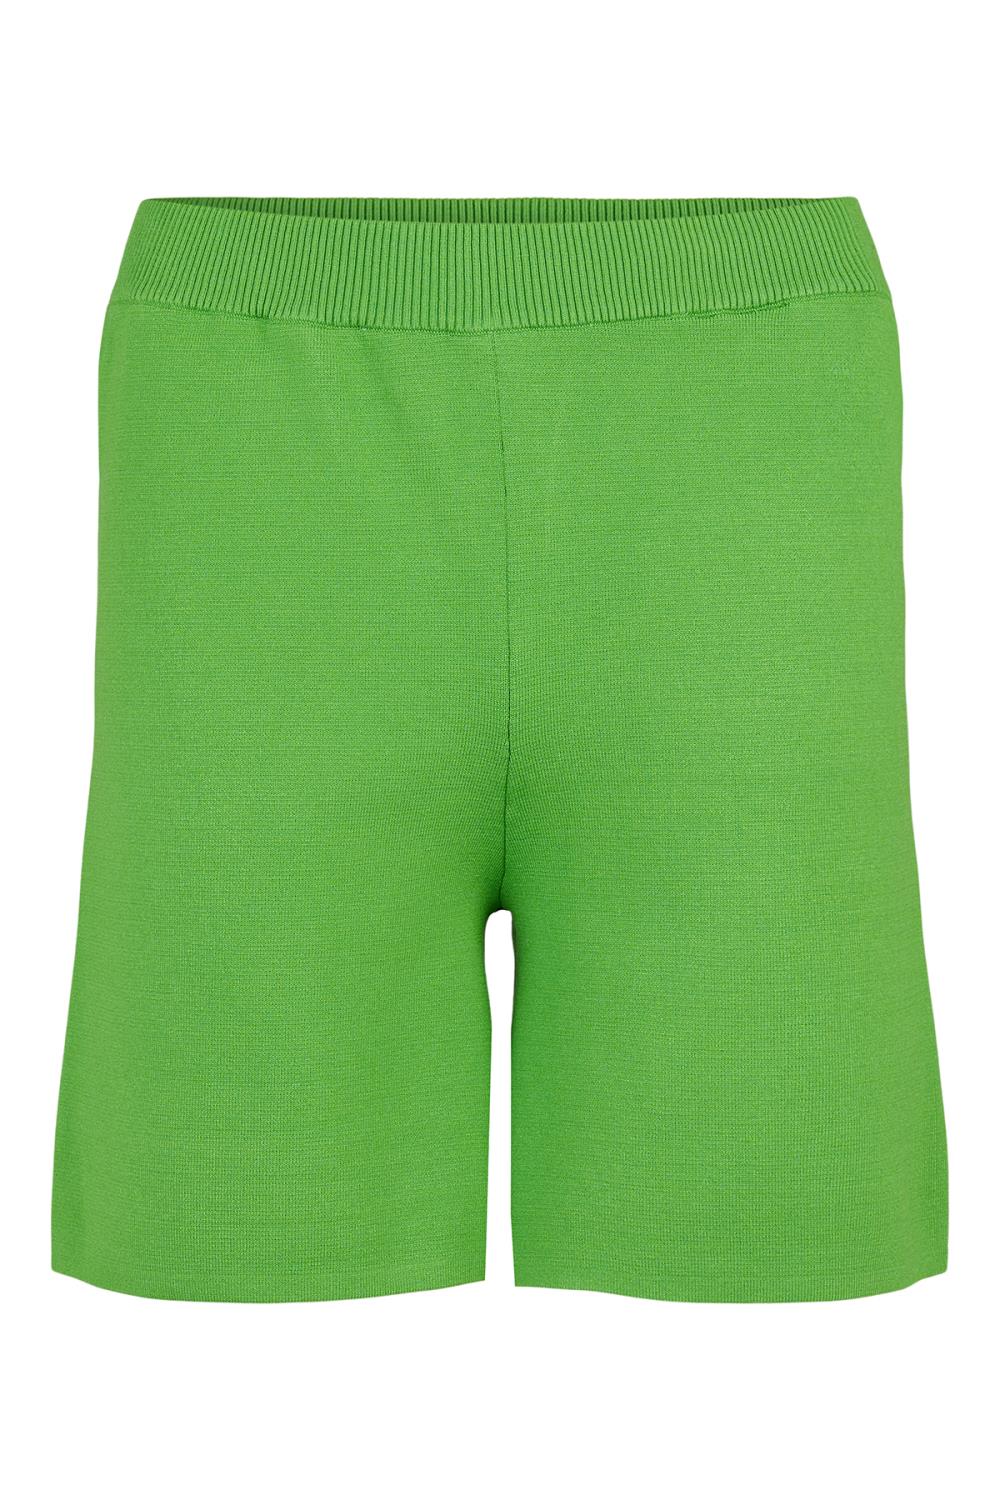 Gomaye strikket shorts, sterk grønn